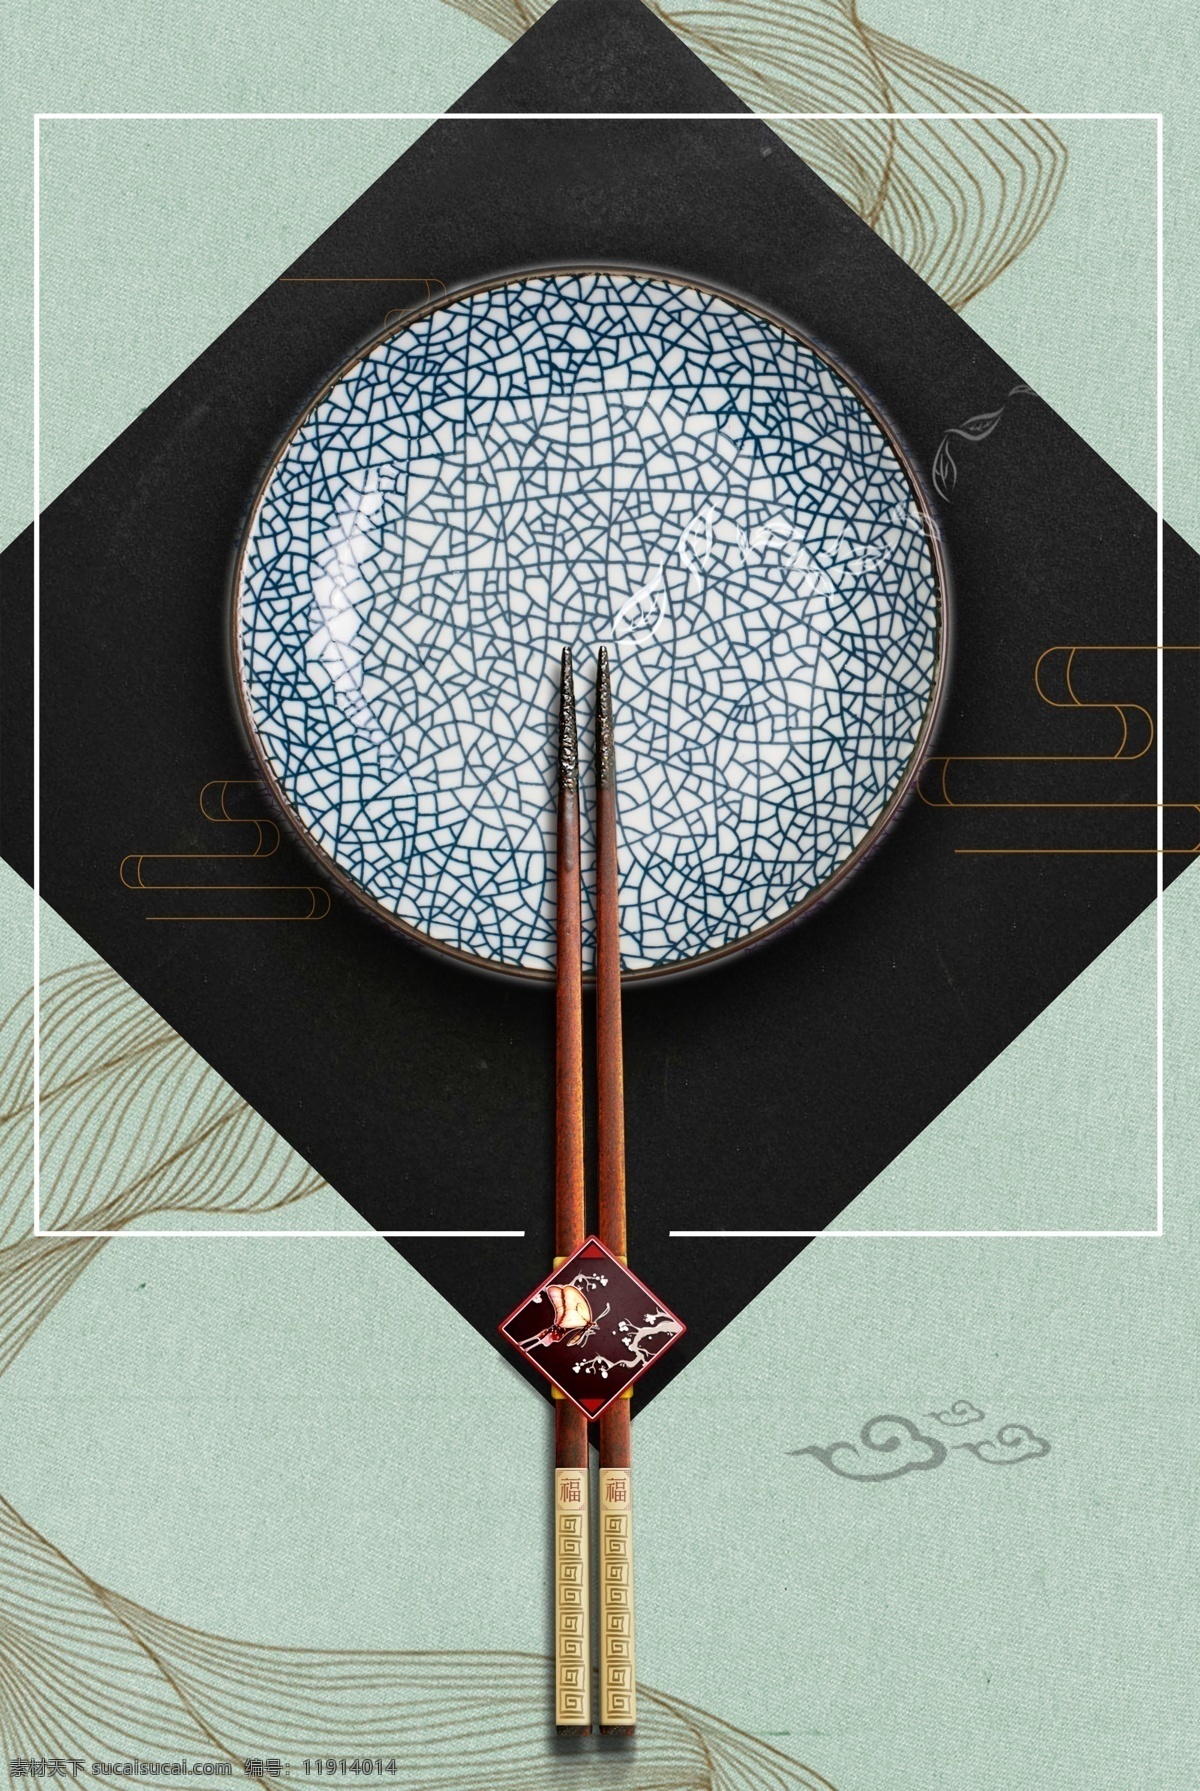 中国 传统文化 筷子 饮食文化 舌尖 背景 中国传统文化 中国风 复古 文艺 水墨风格 创意意境背景